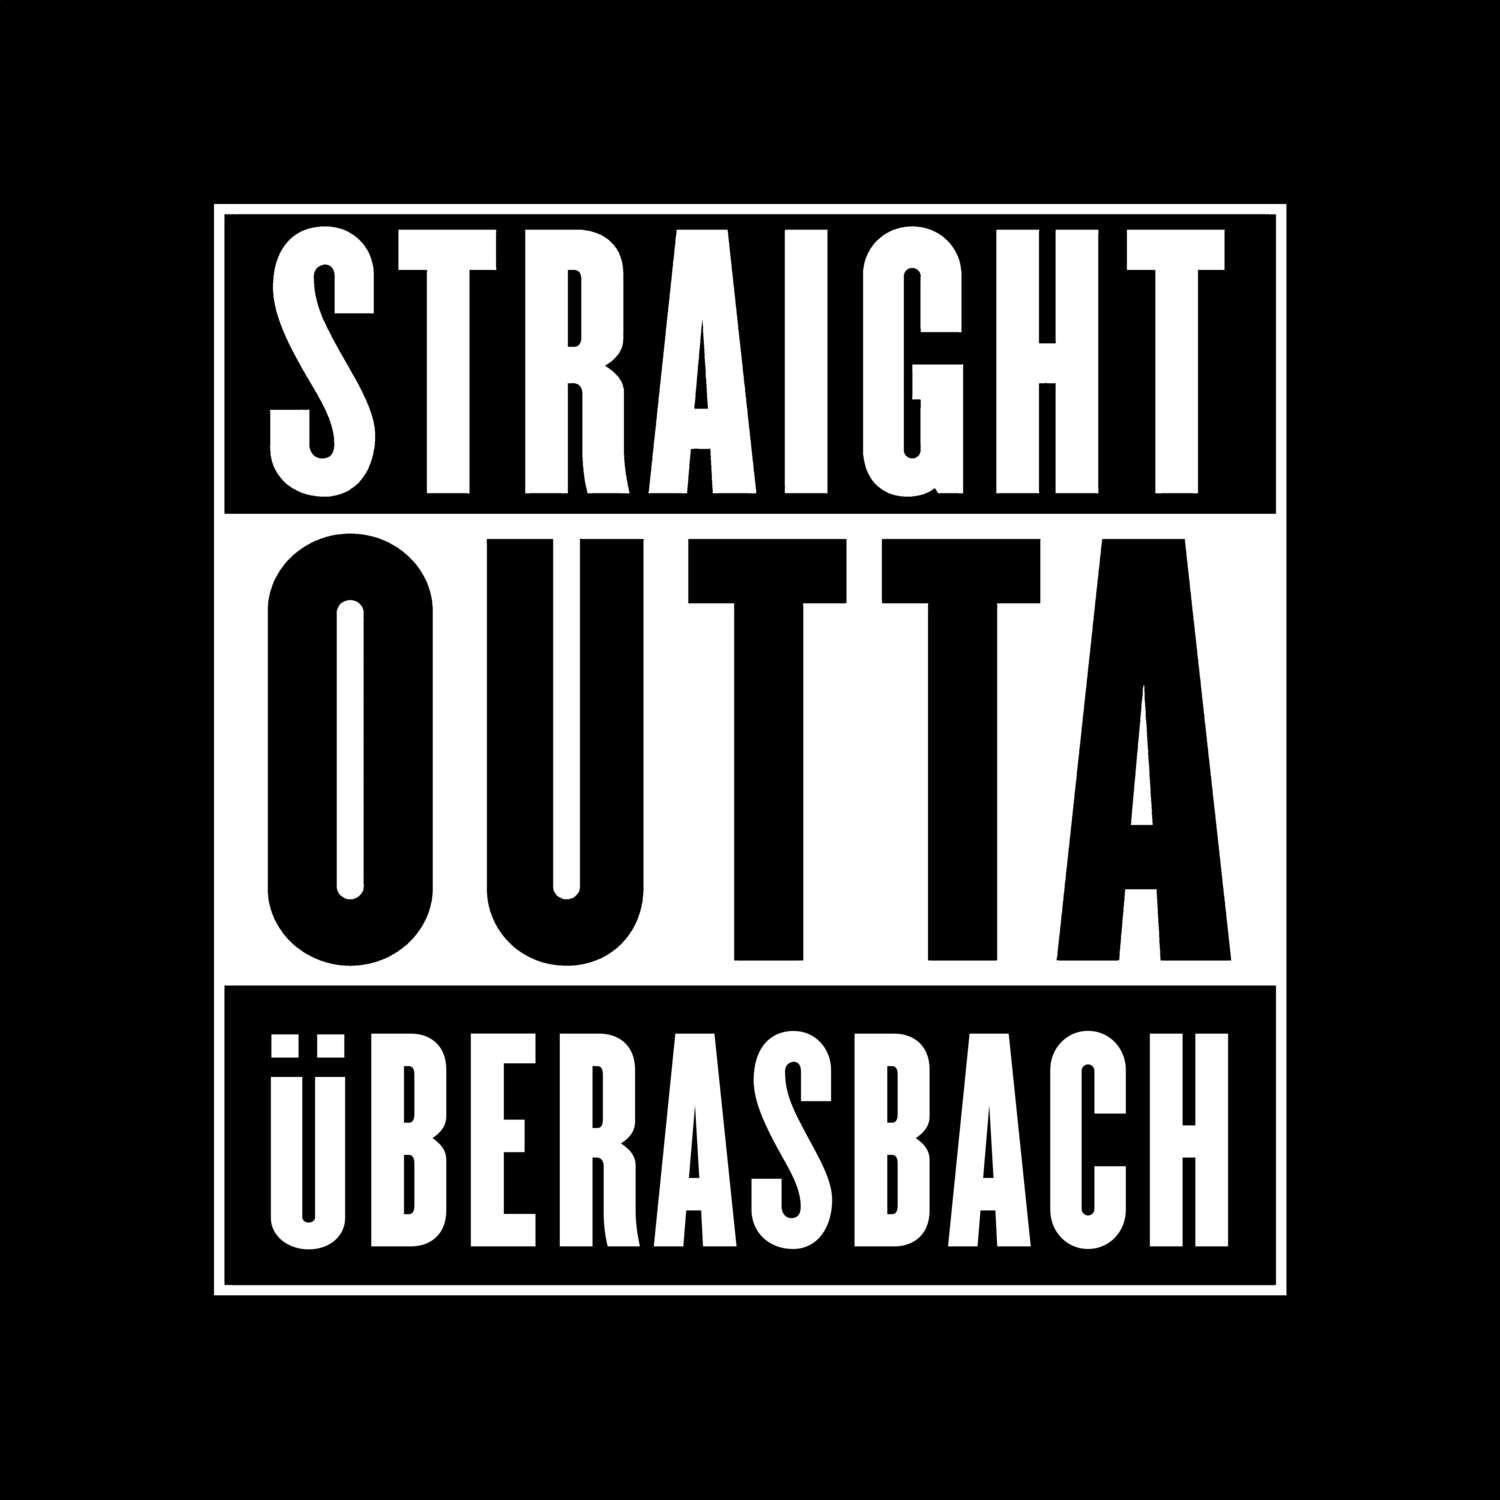 Überasbach T-Shirt »Straight Outta«